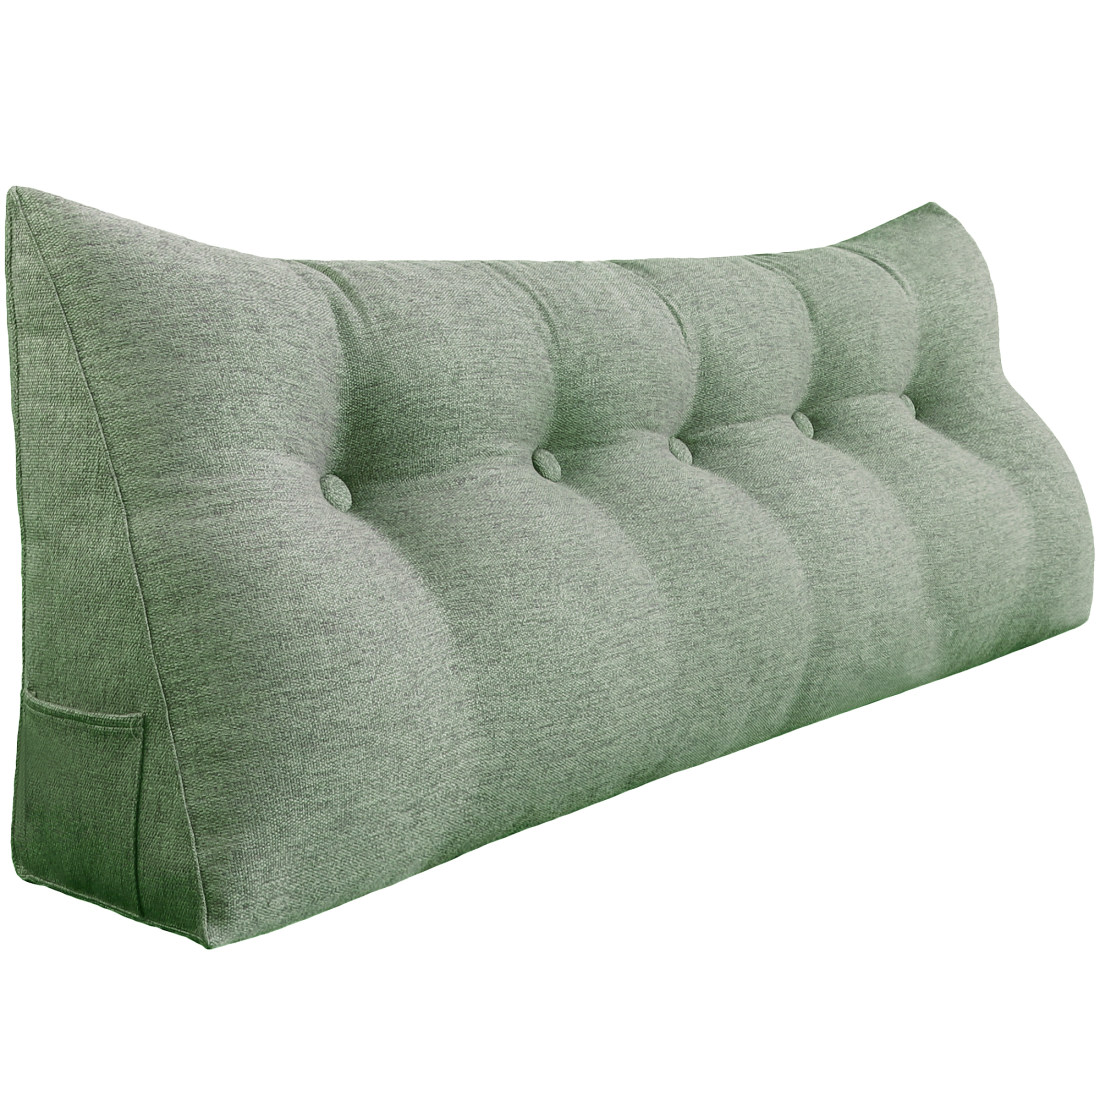 https://www.zencent.com/wp-content/uploads/2020/06/961-backrest-pillow-59inch-green-1.jpg